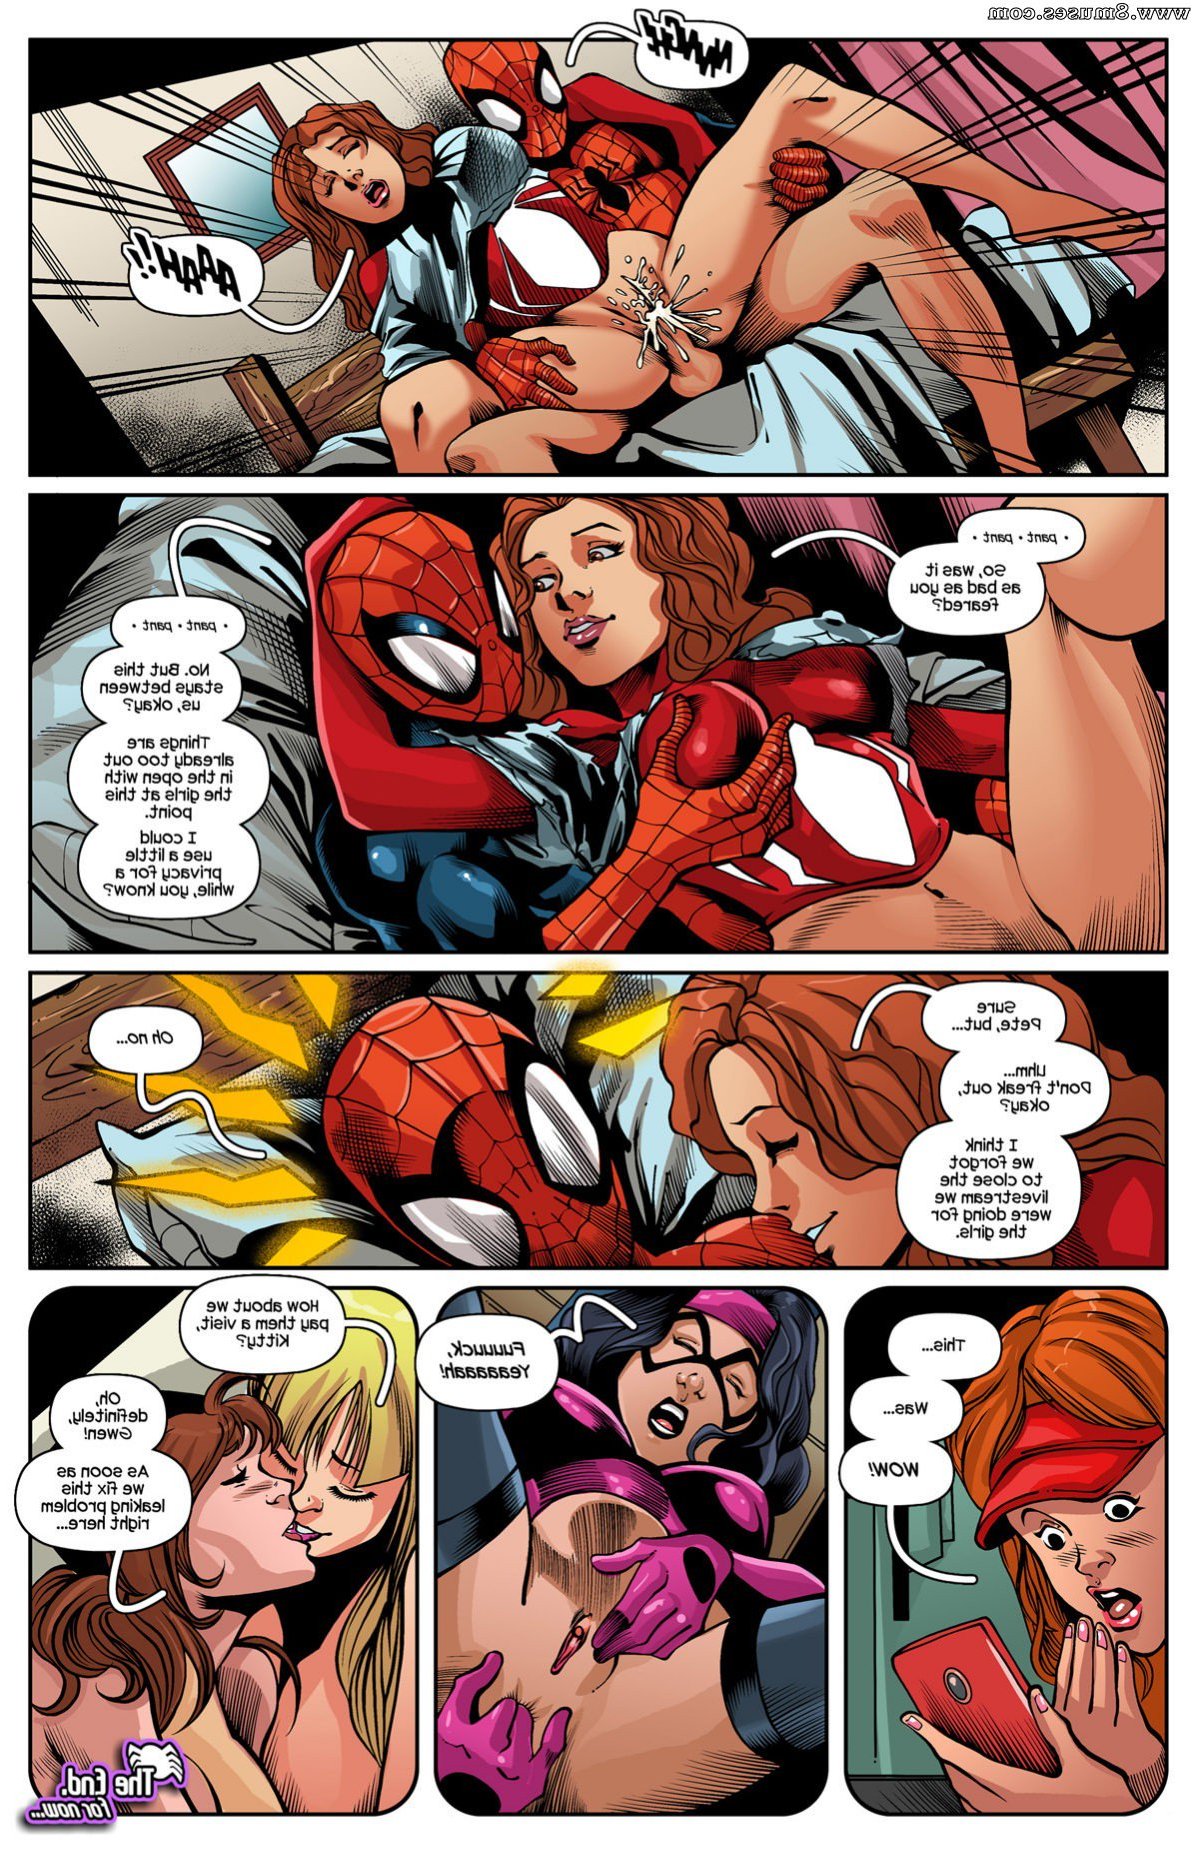 Spidercest Issue 12 Ics